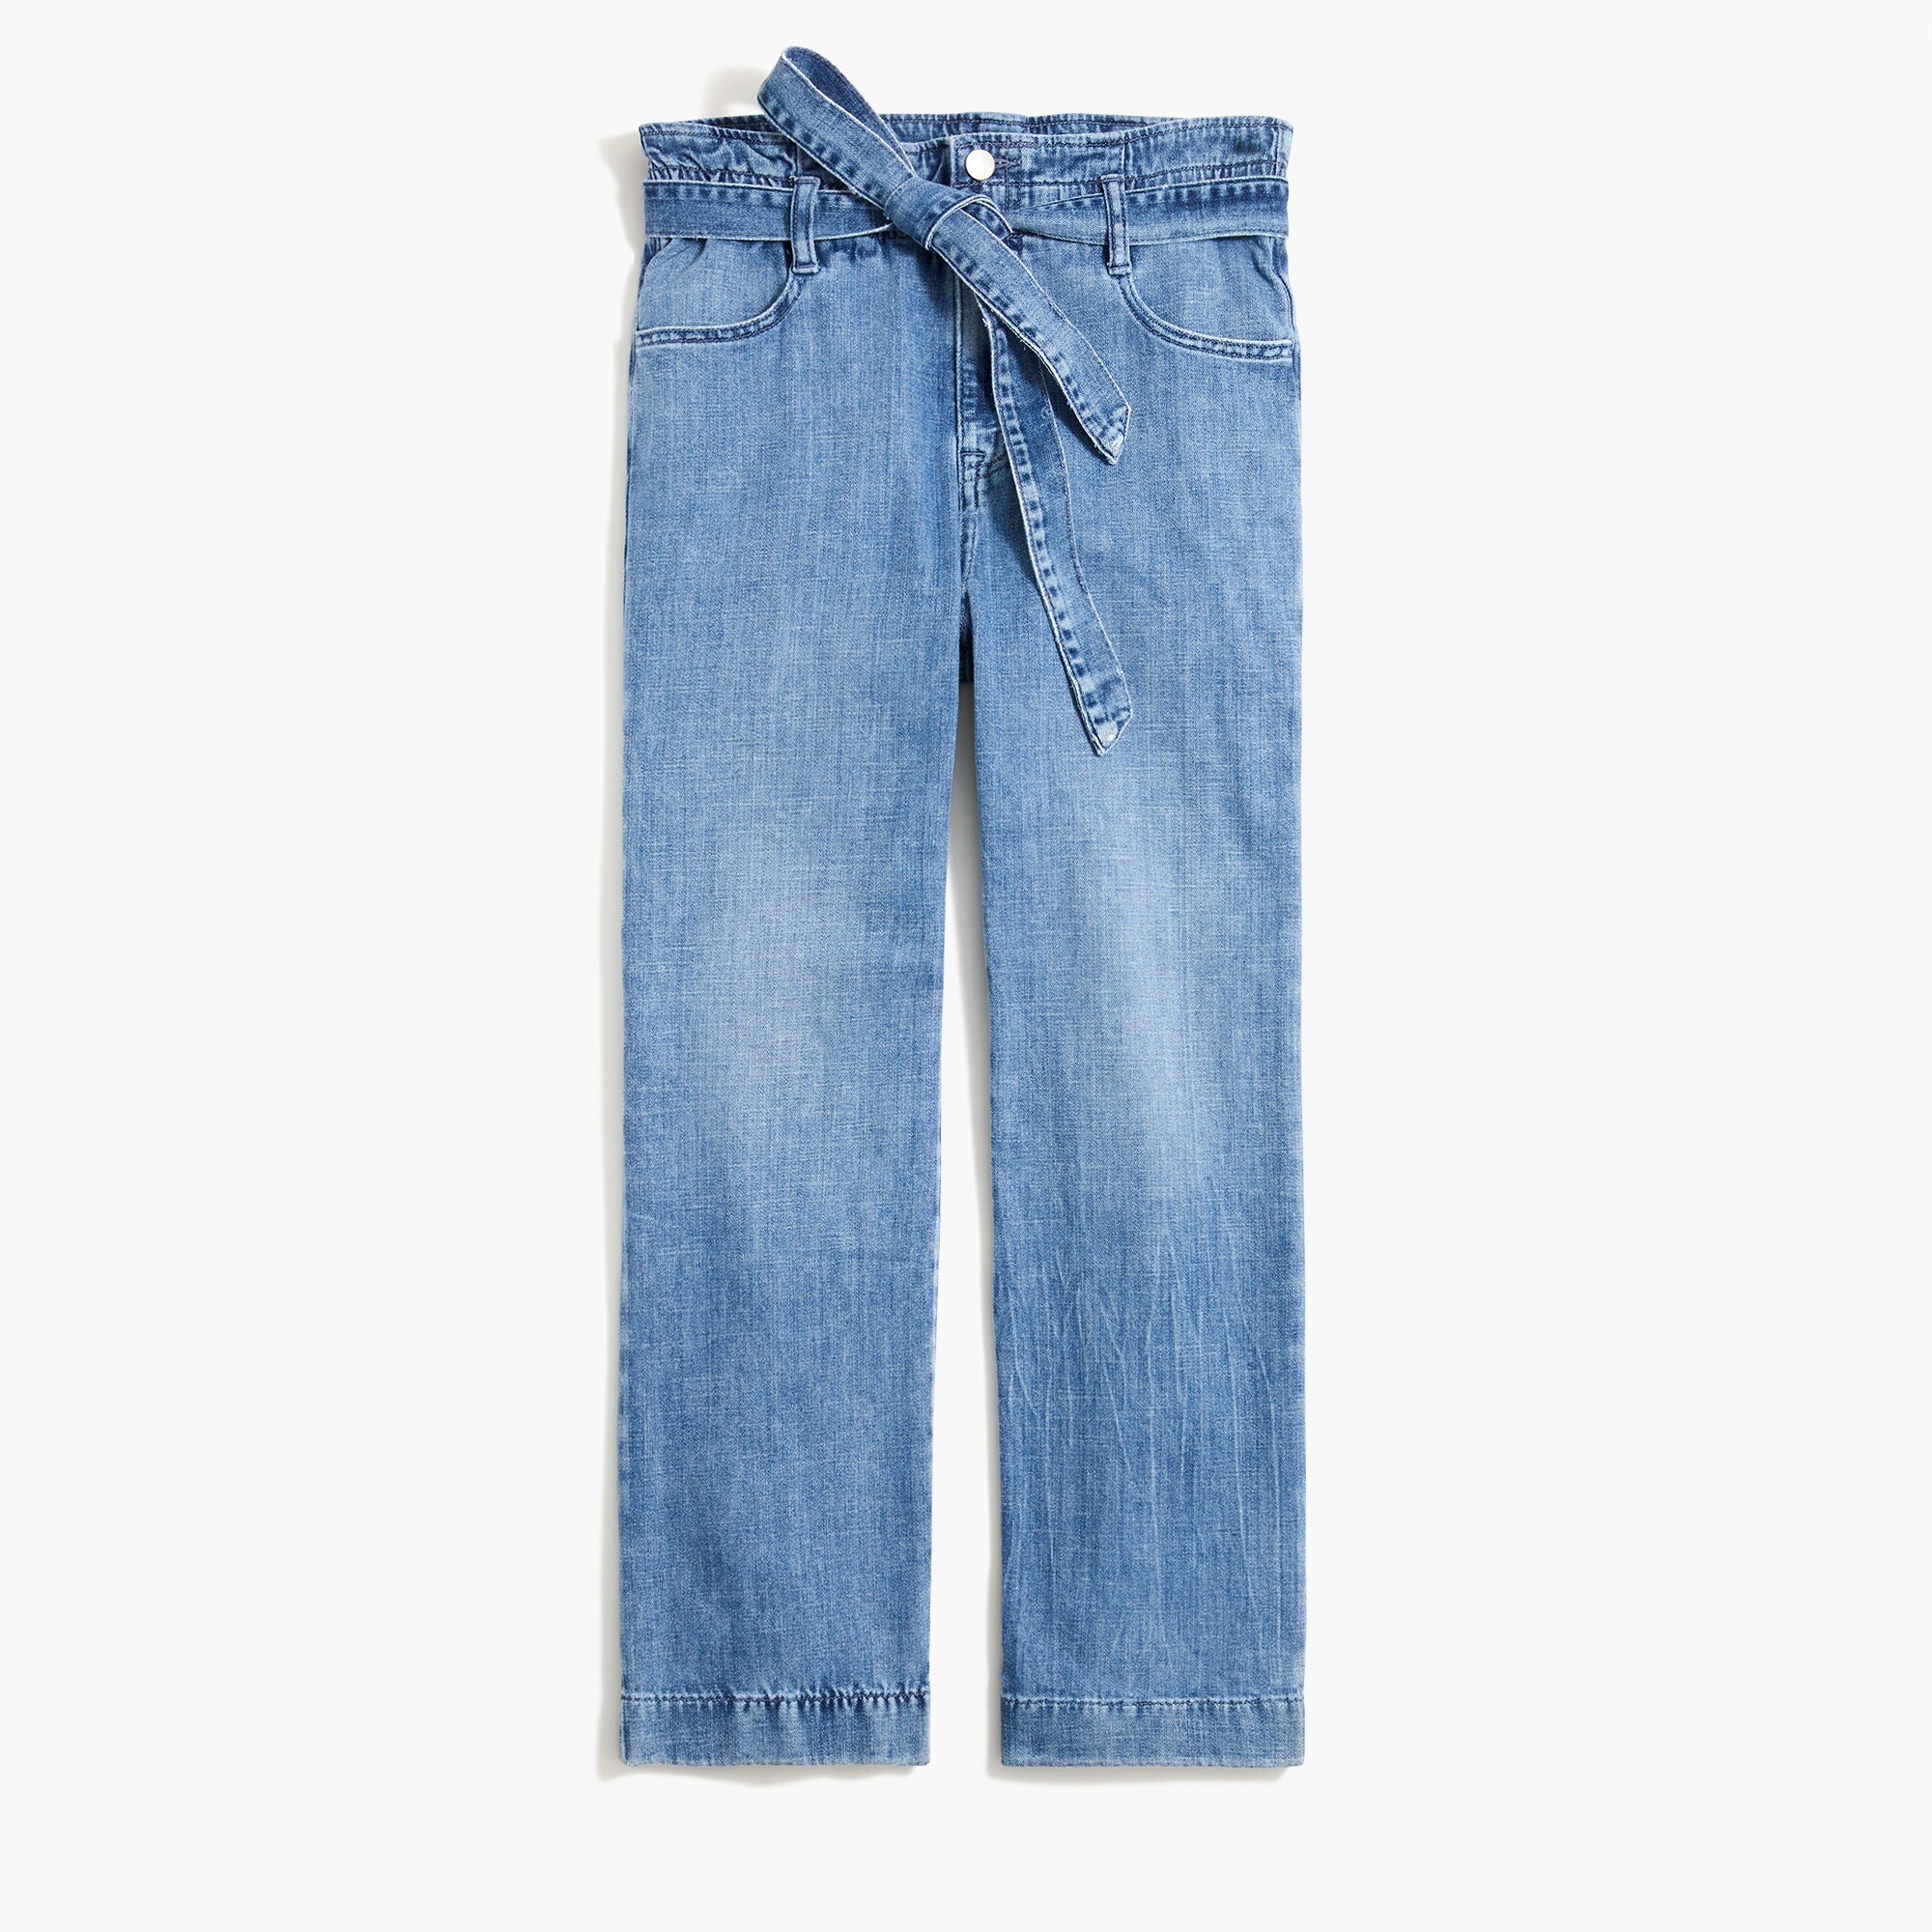  Paper-bag jean in signature stretch